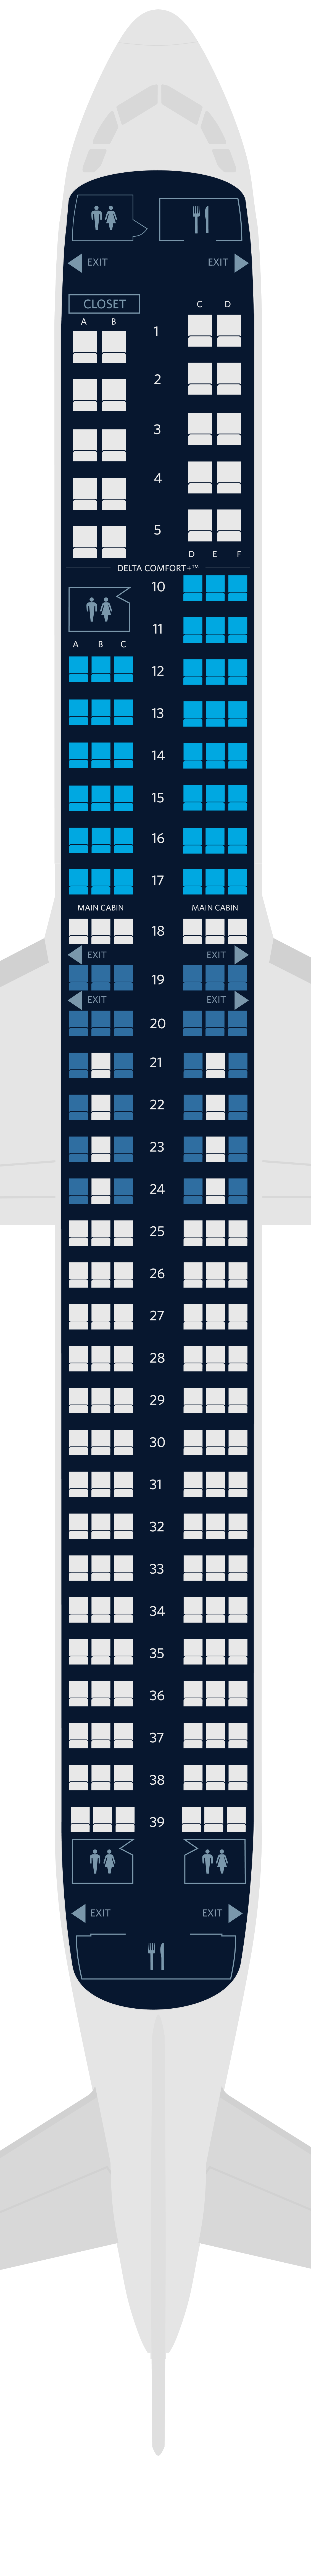 空中巴士A321neo座位圖